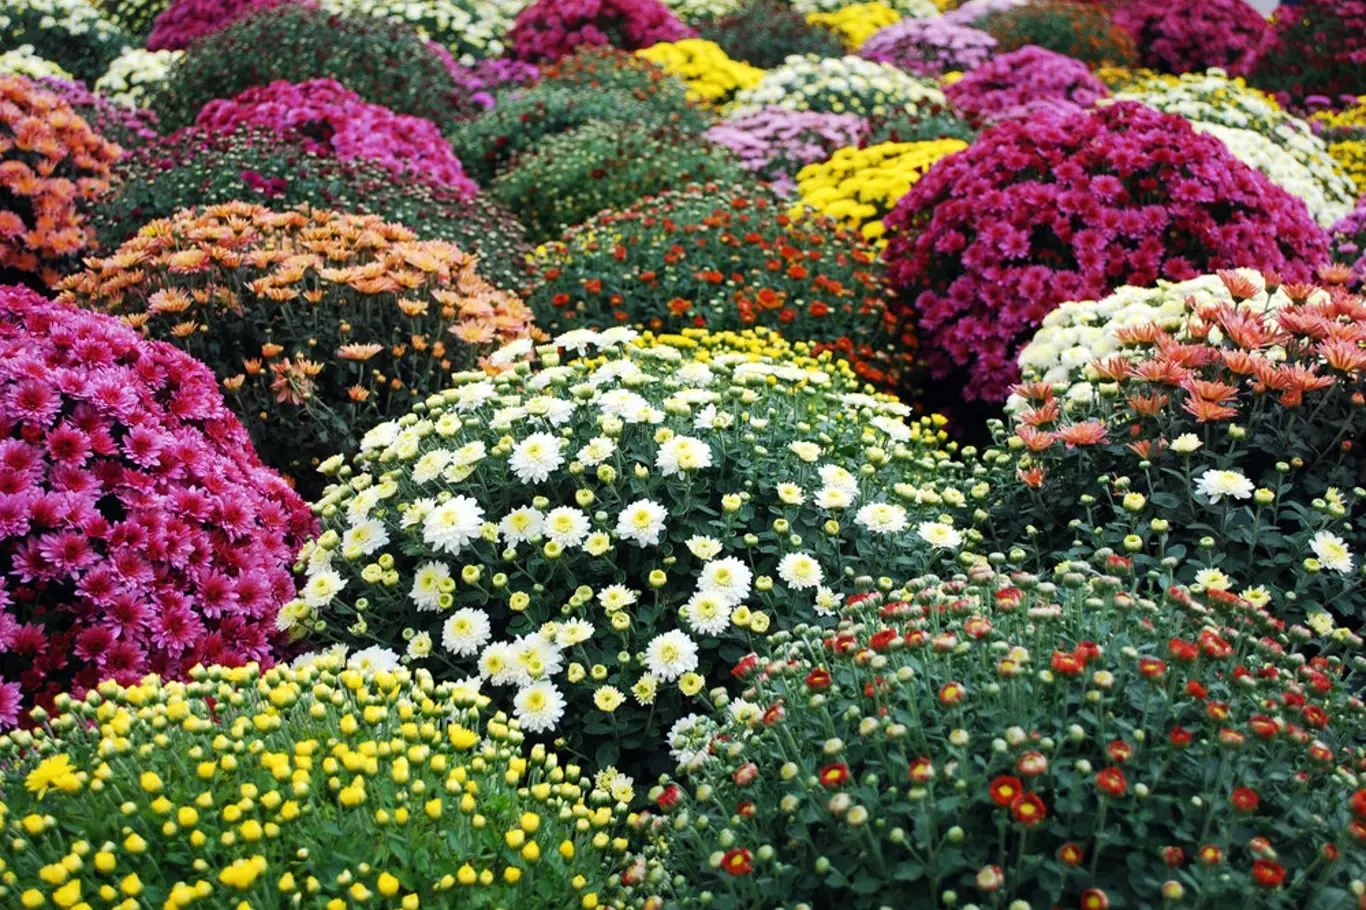 Chryzantémy zapěstované do kompaktních tvarů jsou ozdobou podzimní zahrady, nejčastěji v nádobách